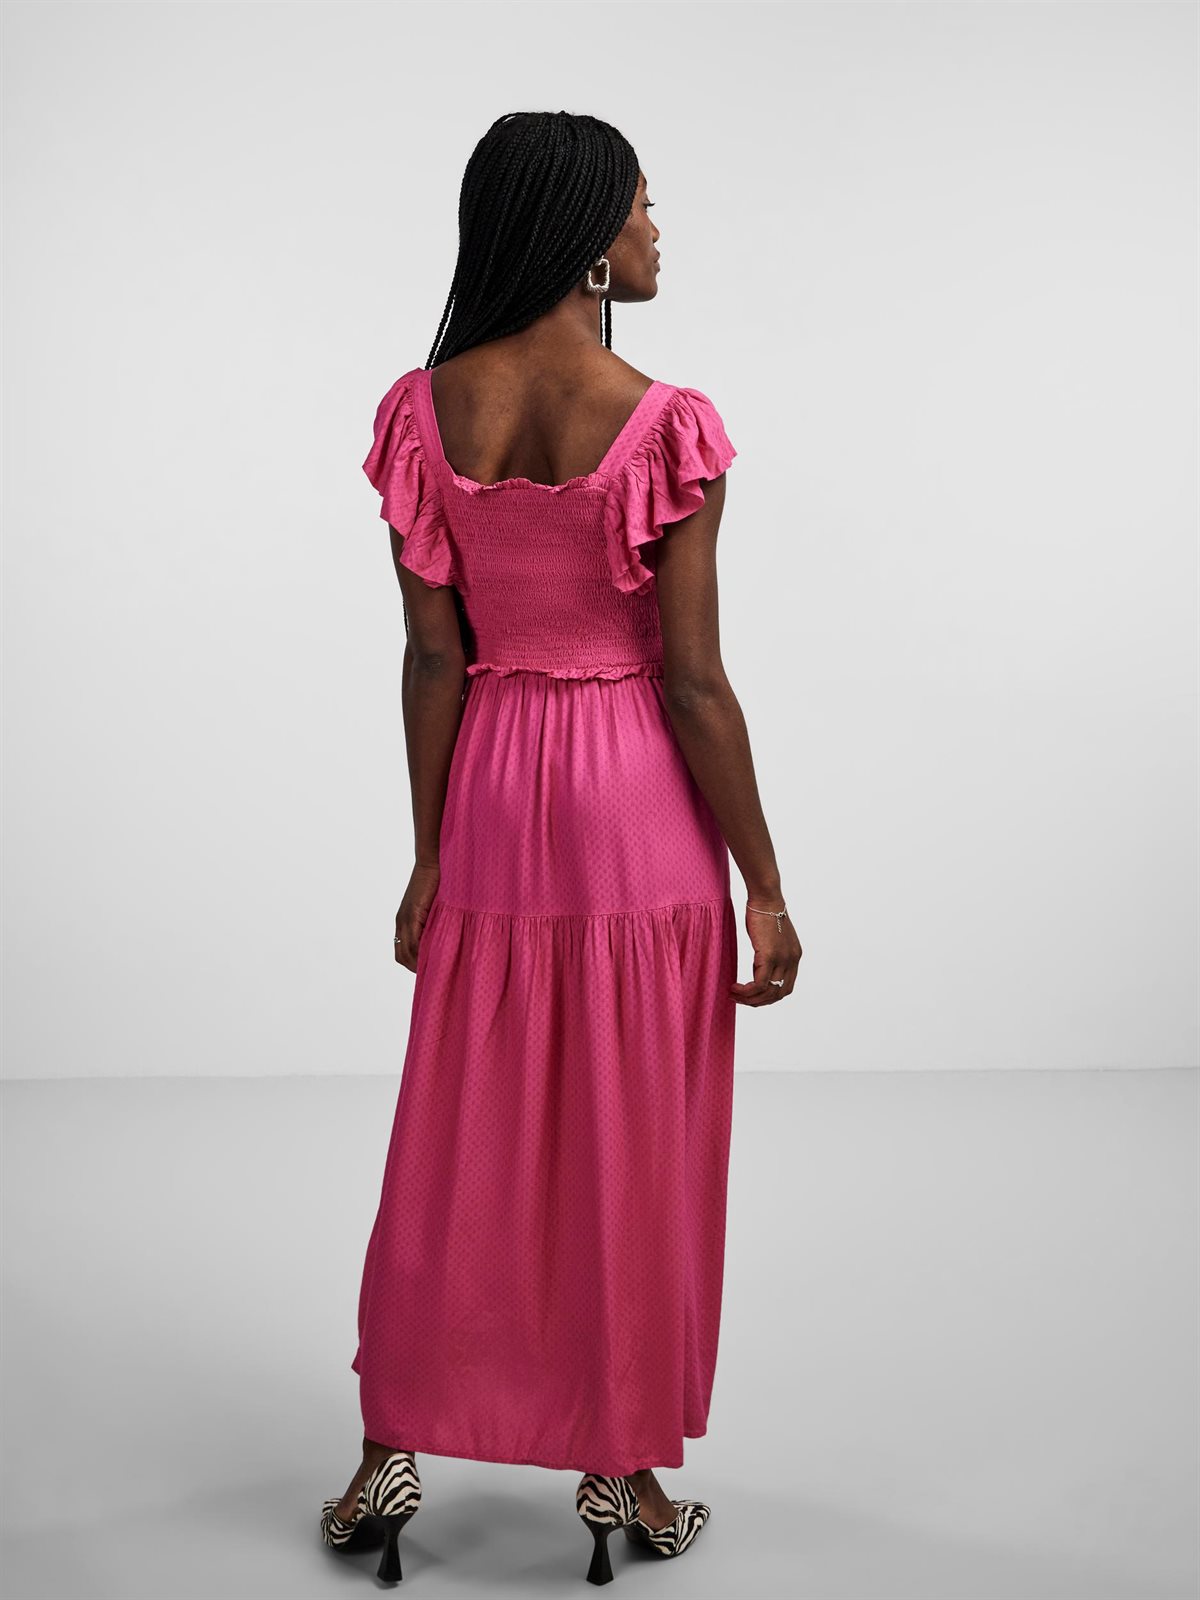 Y.A.S - Citri Sl - Long Fuchsia Dress